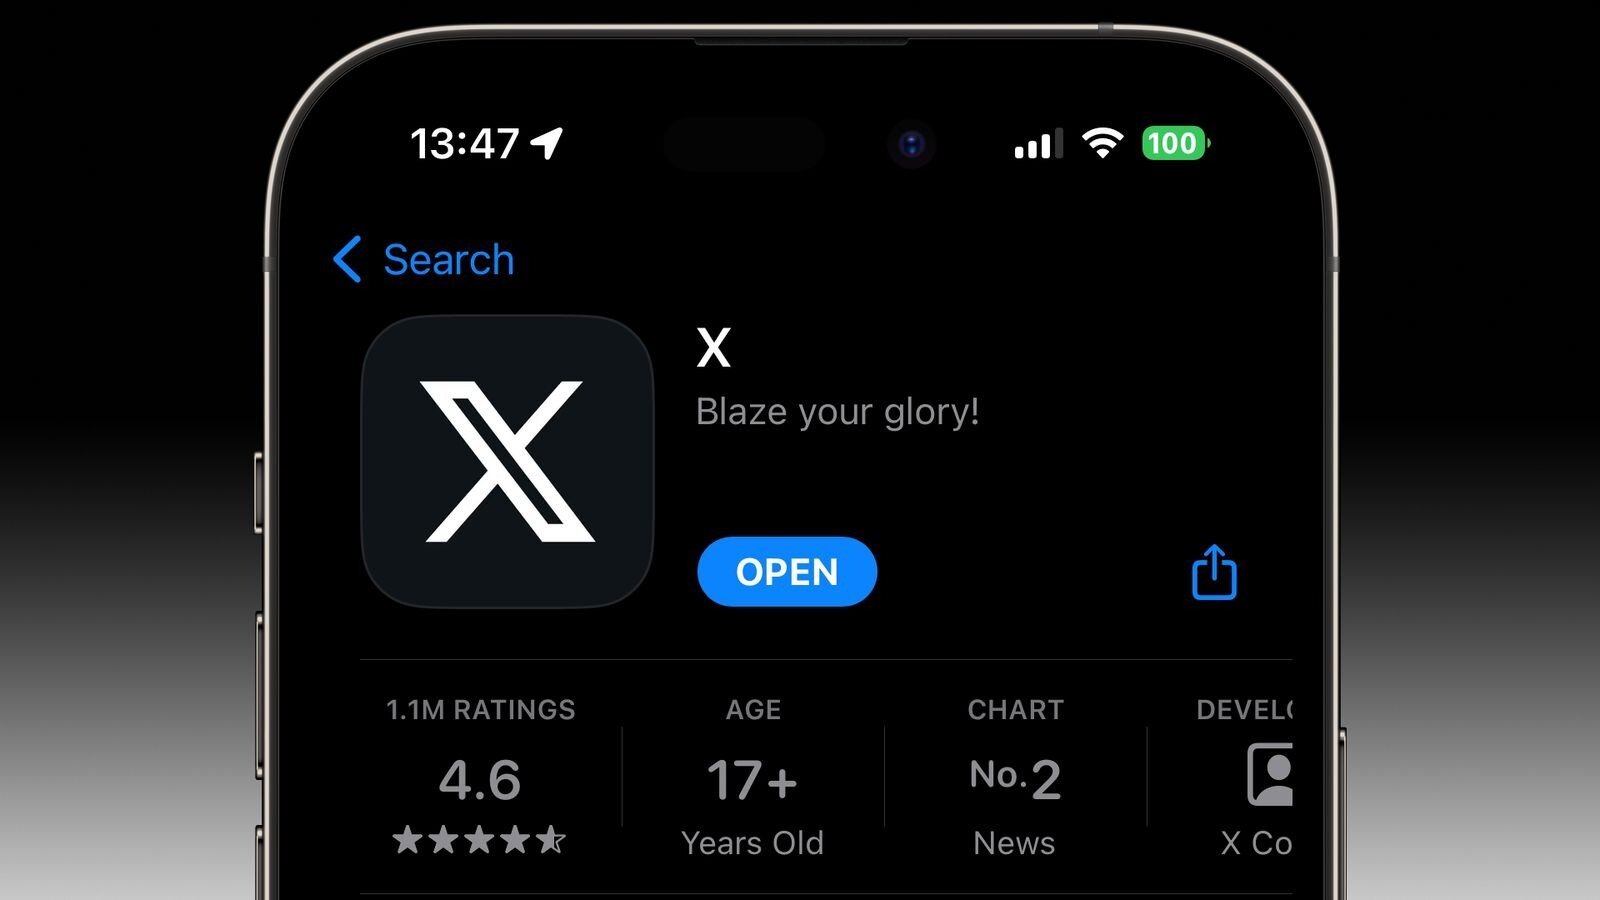 Το Twitter παίρνει ειδική άδεια για να εμφανίζεται ως "X" στο App Store του iPhone